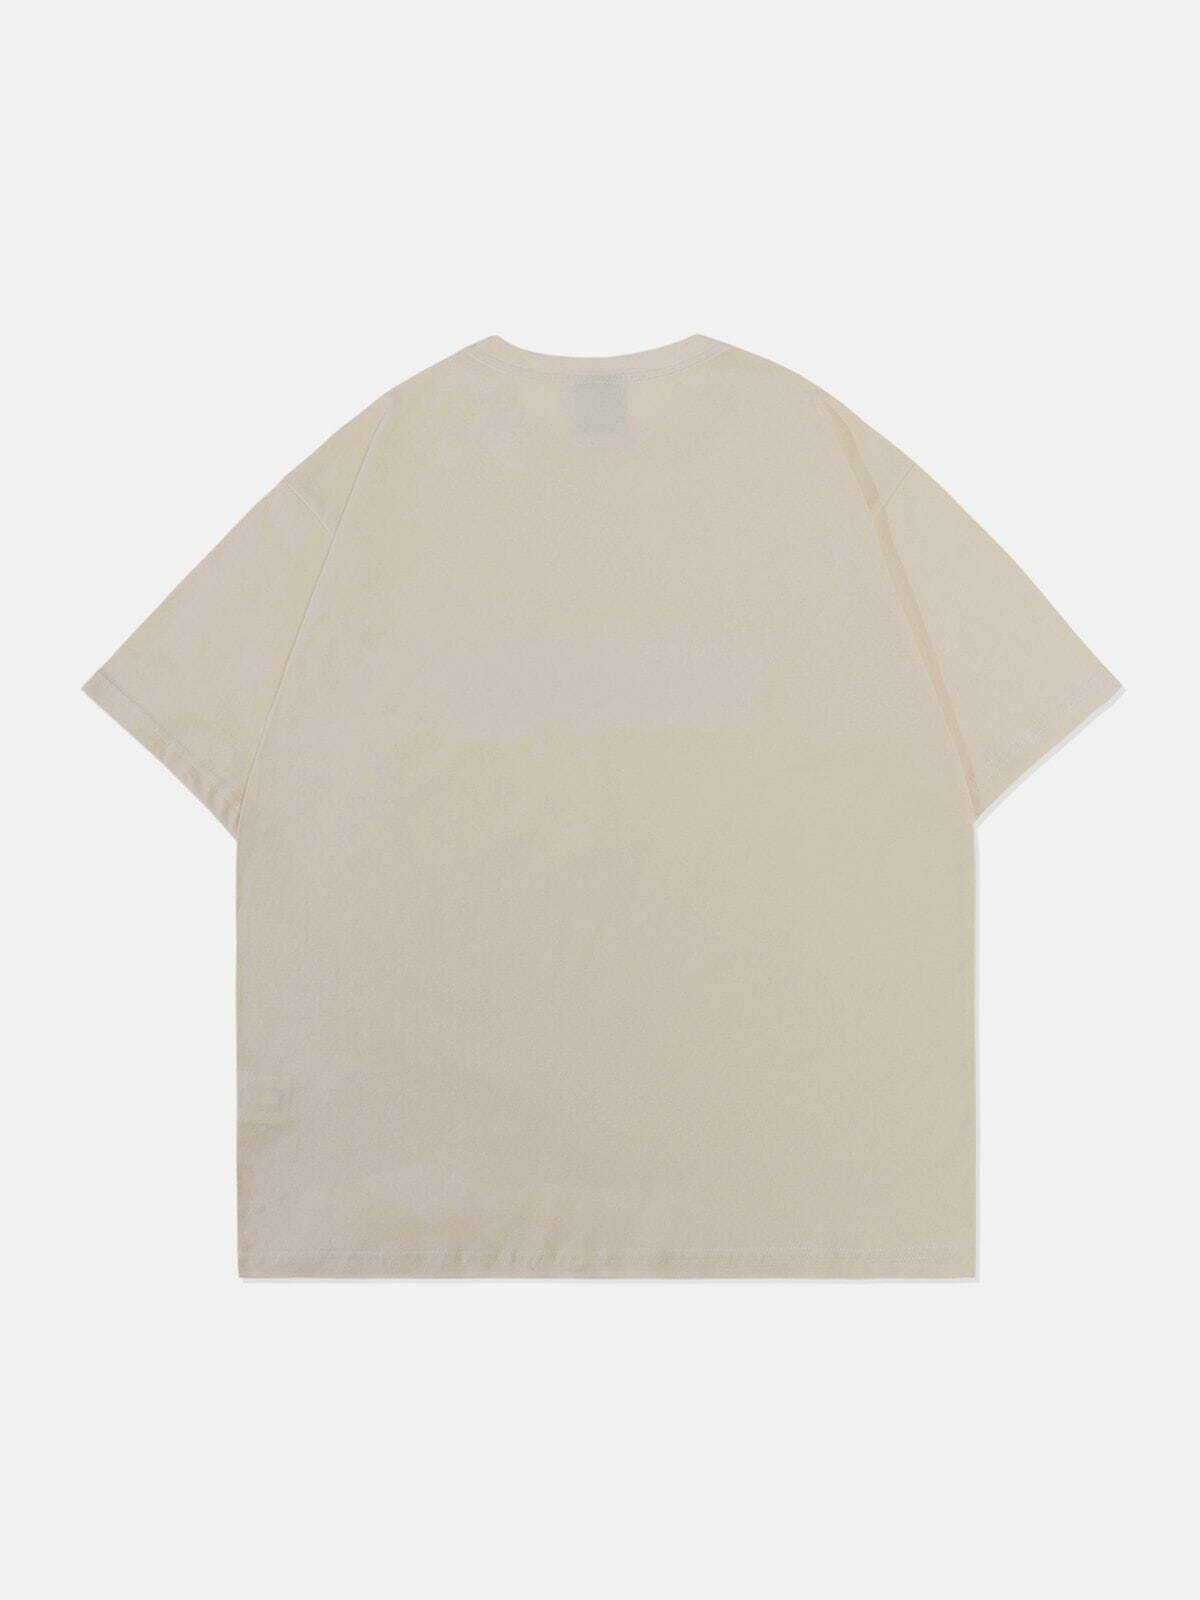 retro blur print tshirt edgy  vibrant streetwear essential 4876